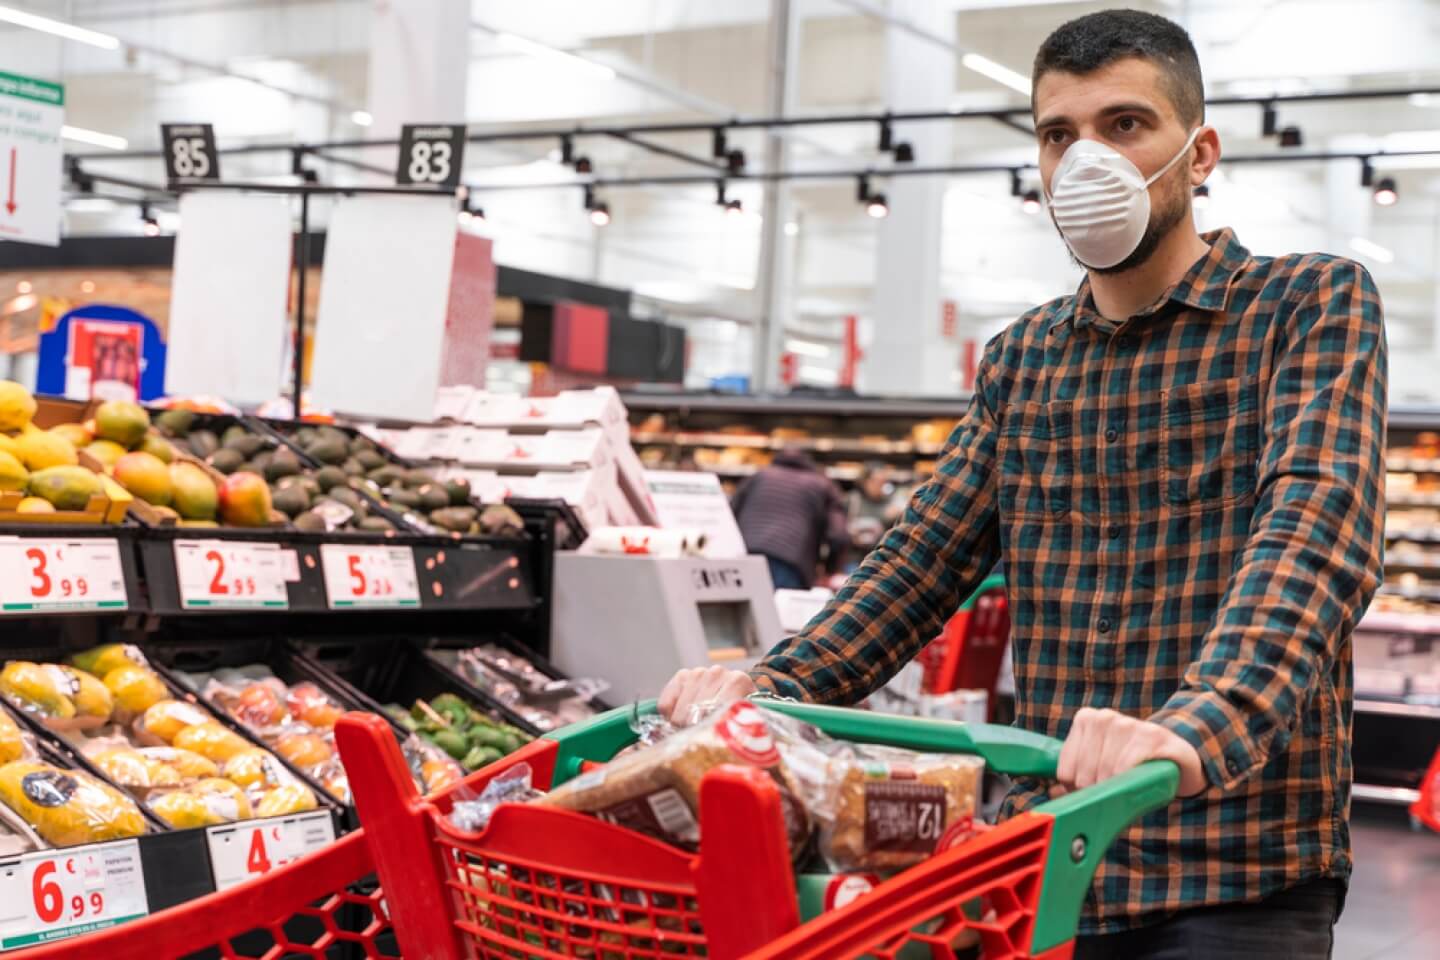 Seorang pria mengenakan masker sedang berbelanja di sebuah supermarket